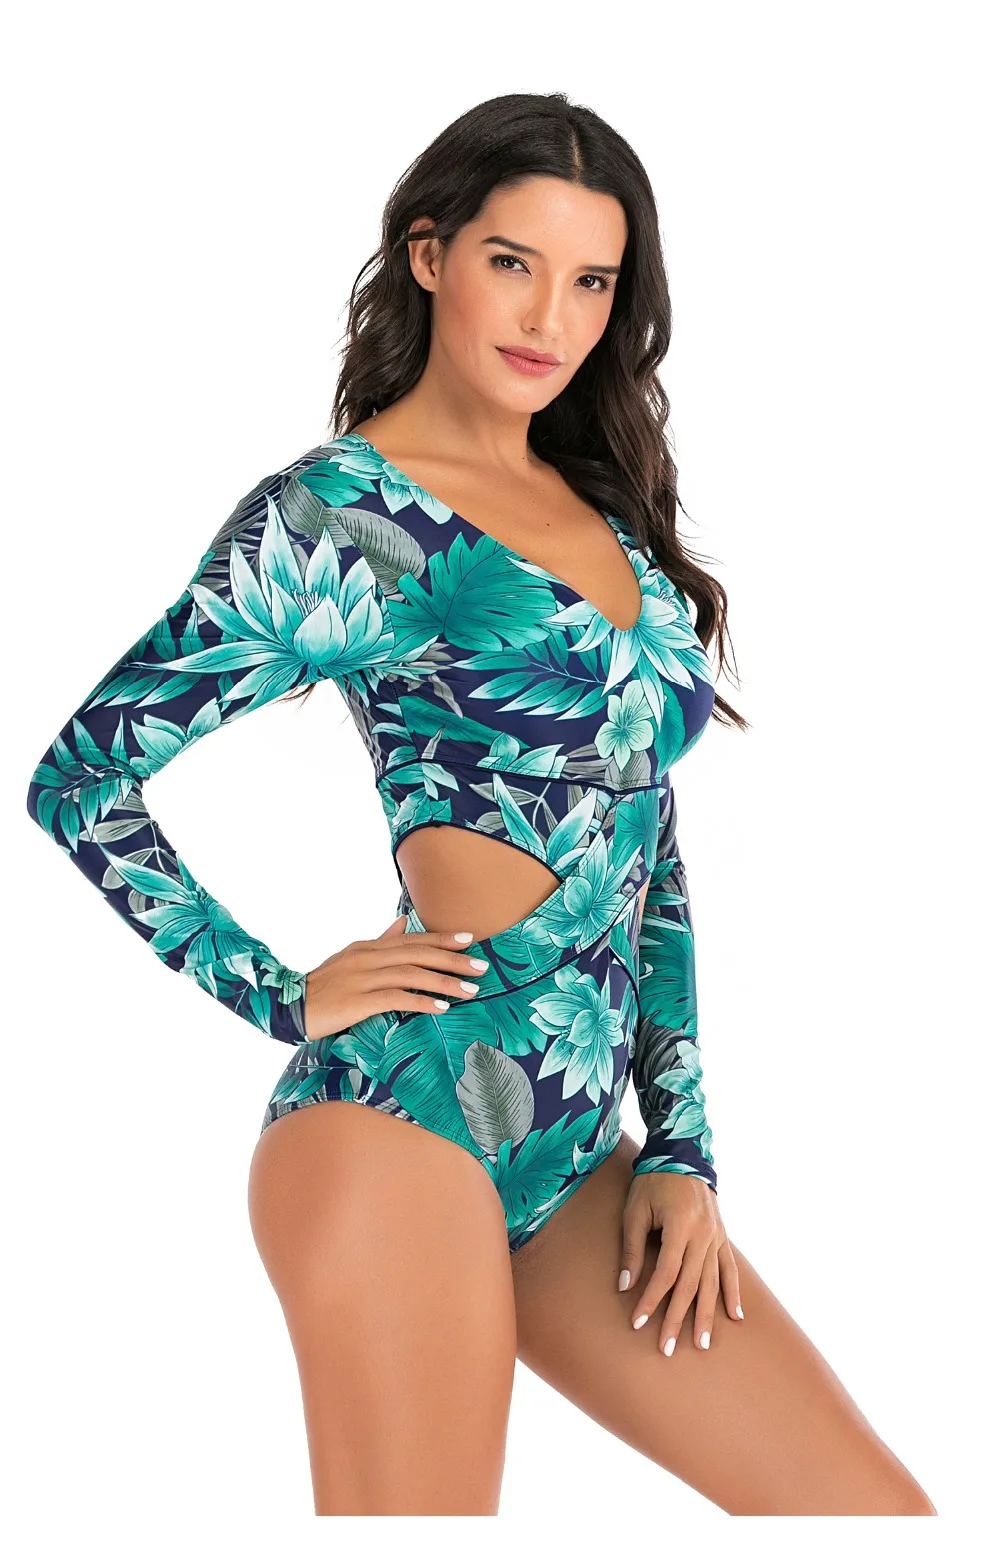 Lady One Piece Swimsuit Print long Sleeve Women zipper Rash Guard Swimwear Bathing Suit female Surfing Swimming Suit